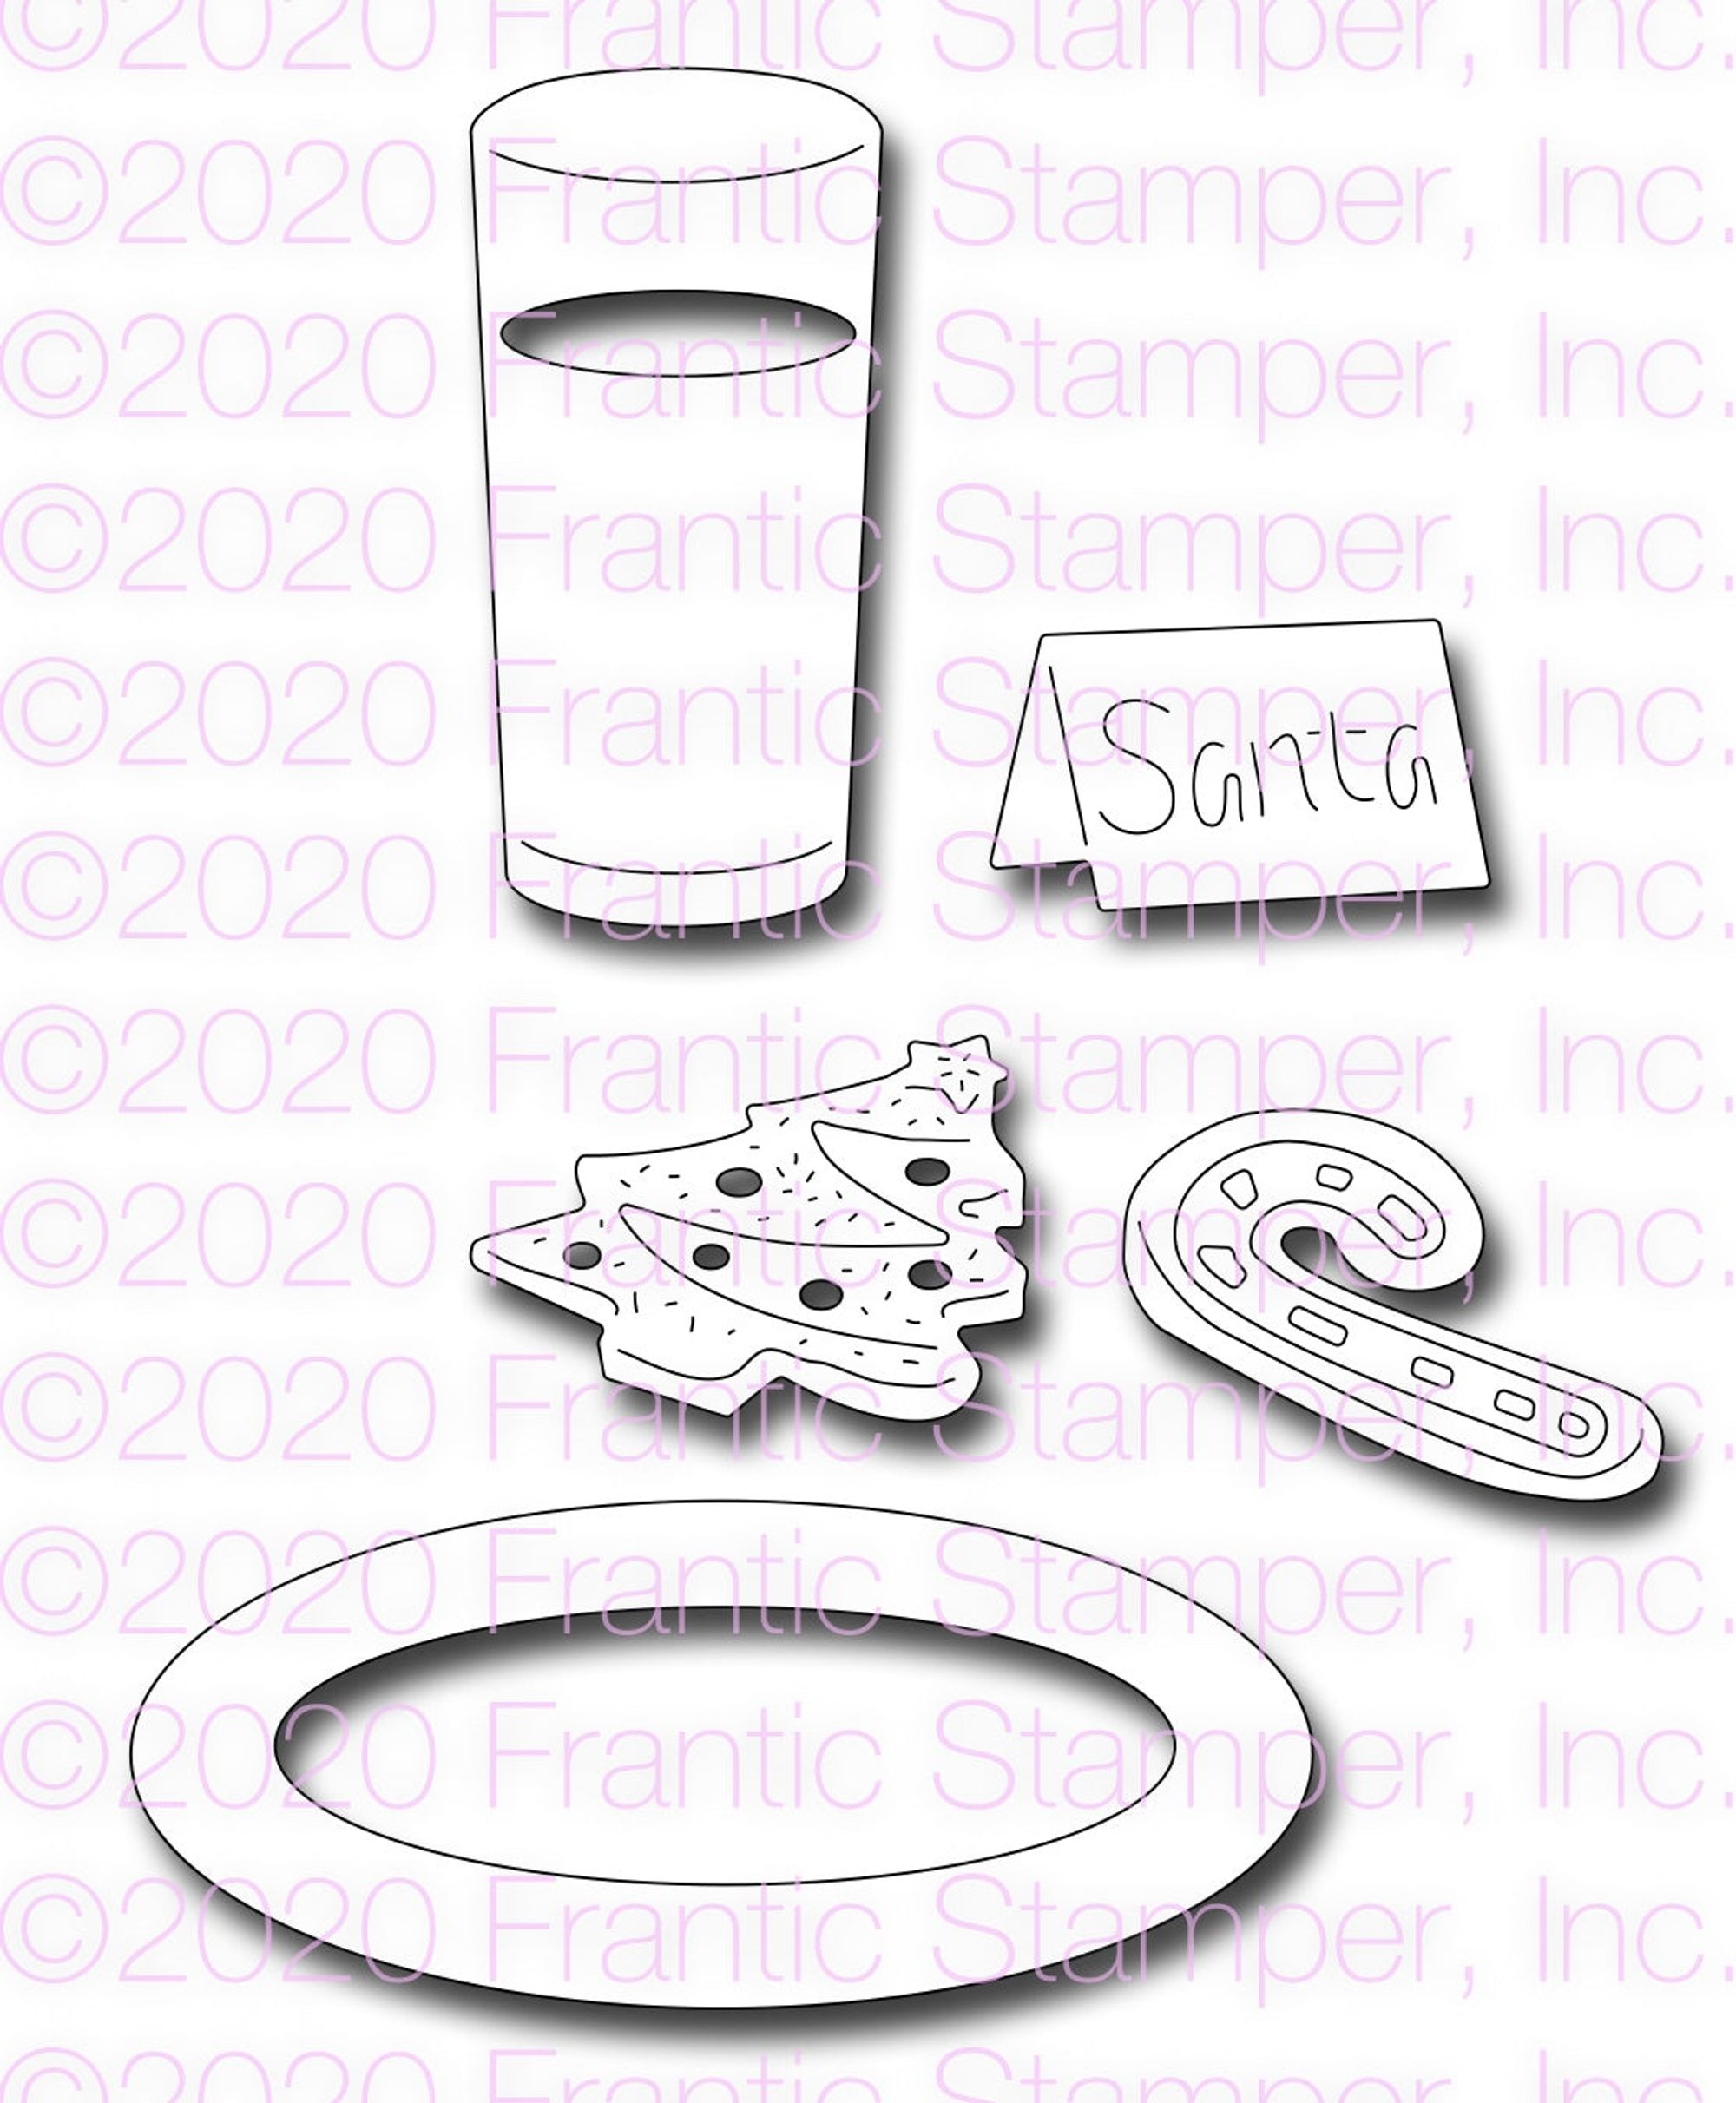 Frantic Stamper Precision Die - Cookies for Santa